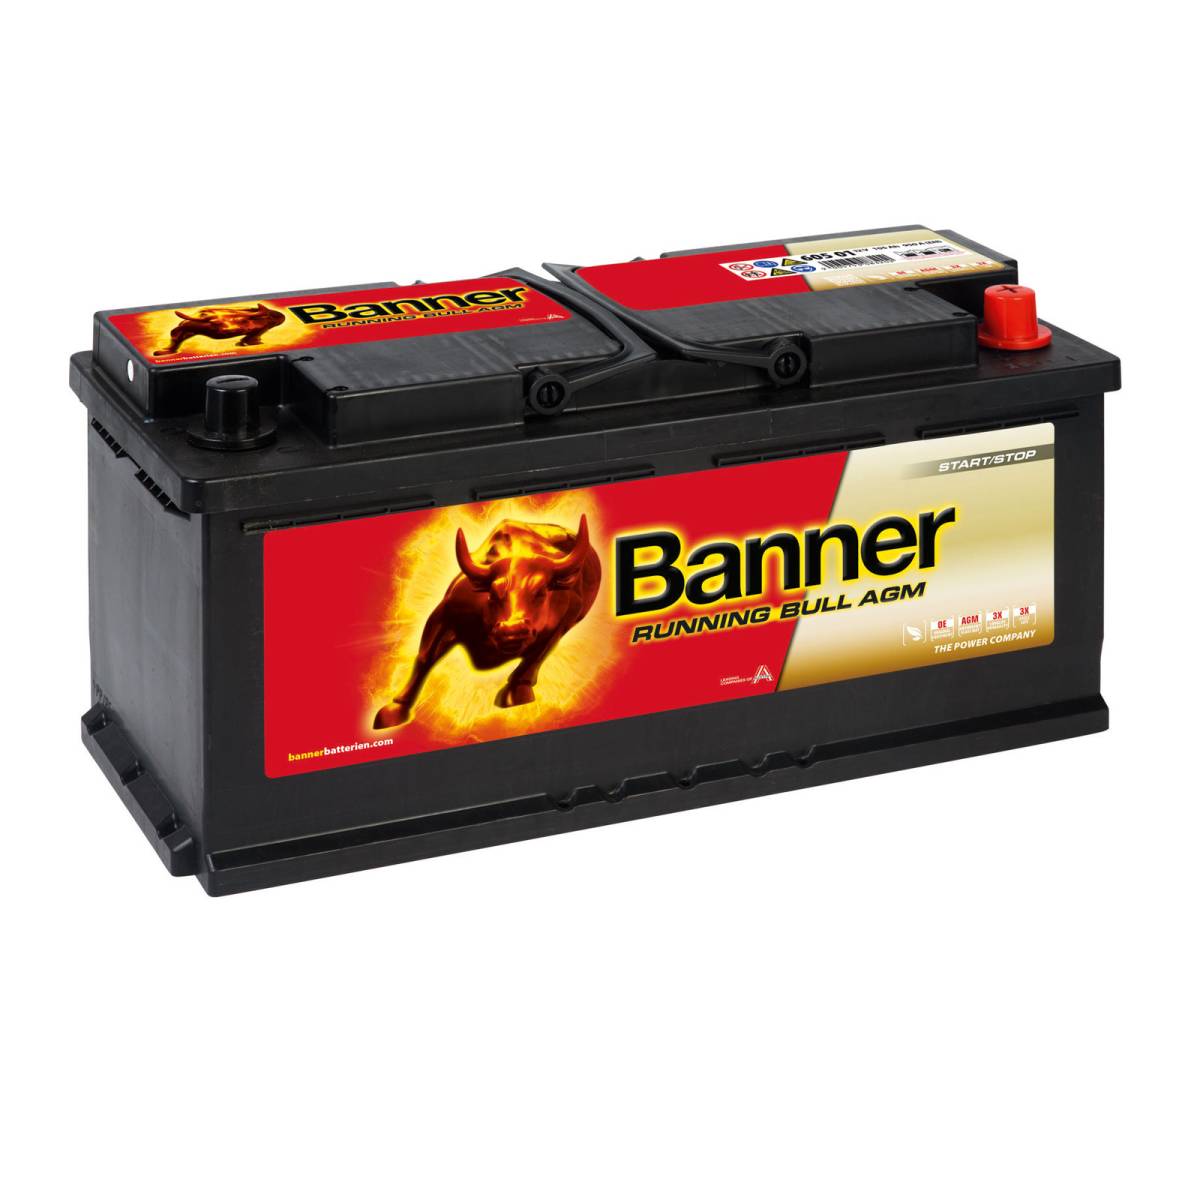 Banner 60501 AGM Running Bull 12V 105Ah 950A batteria auto